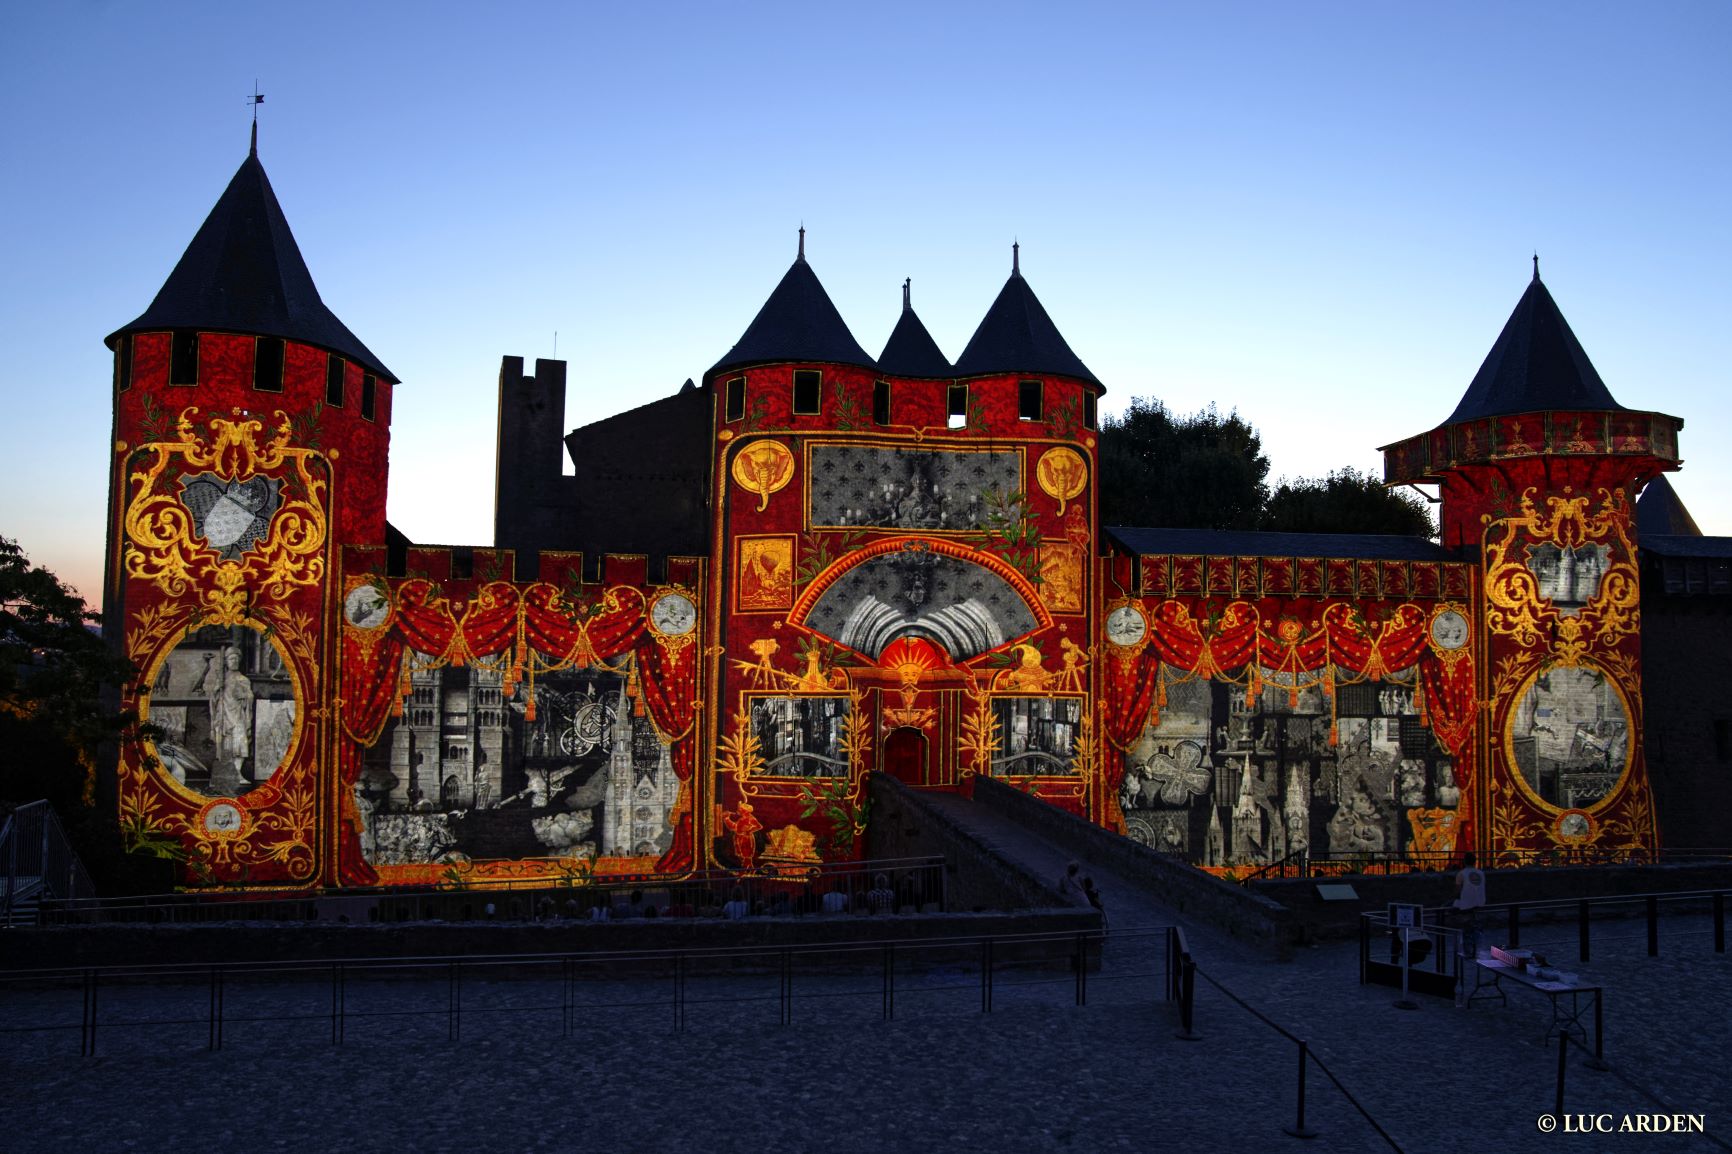 Visiter Carcassonne : Nos conseils pour découvrir la ville - Blog